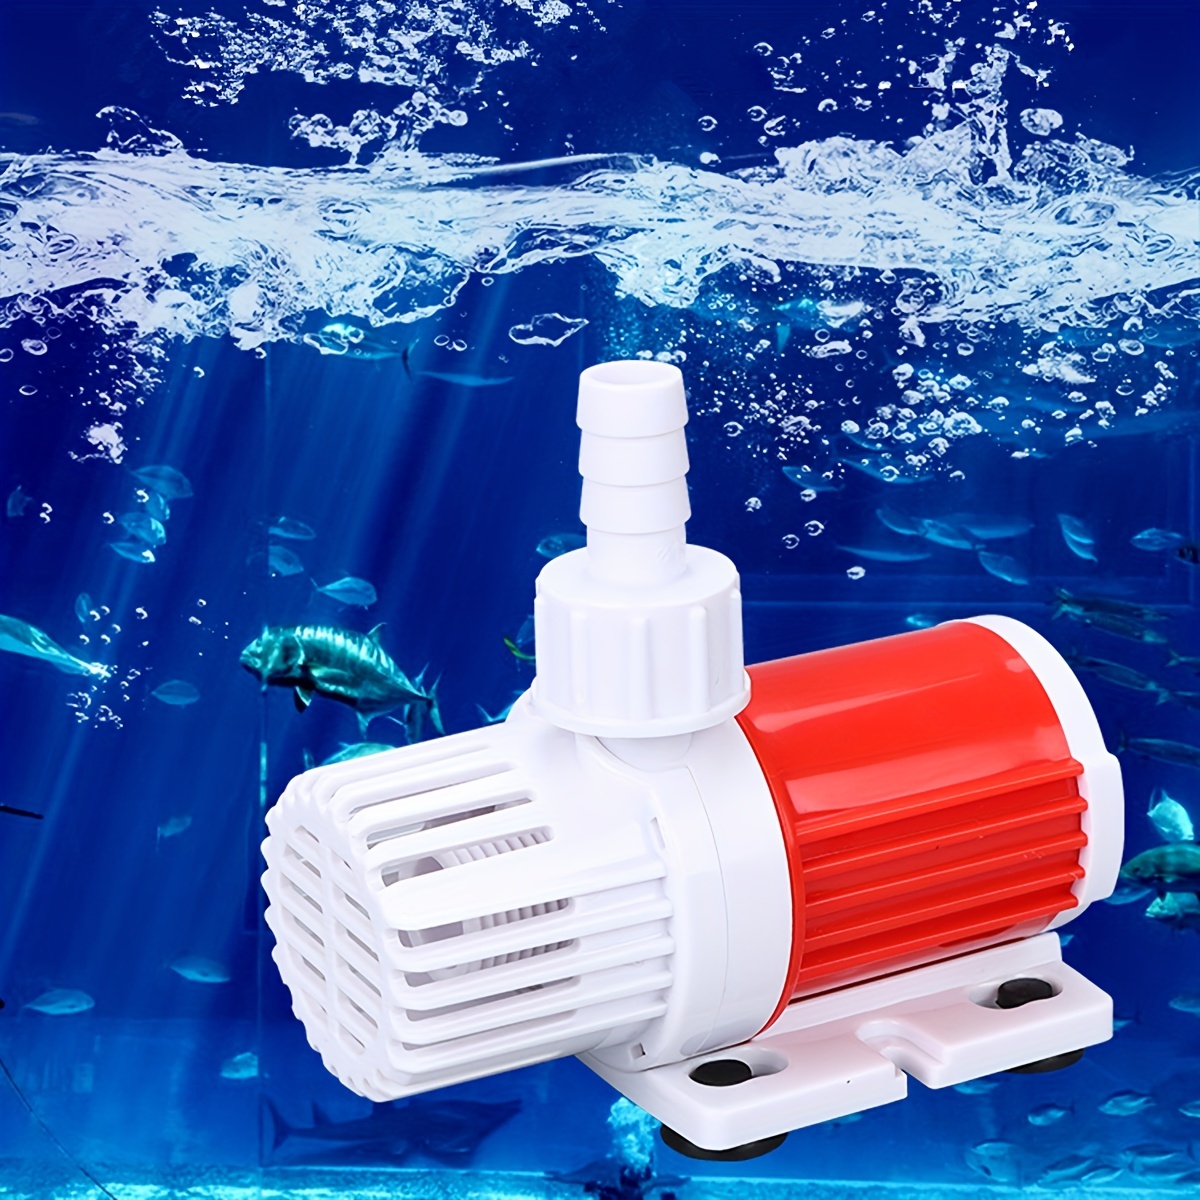 Pompe à eau Submersible à haut débit, 12V, 5m, 1000L/H, pour camping-car,  caravane, camping-car, accessoires d'aquarium de poissons